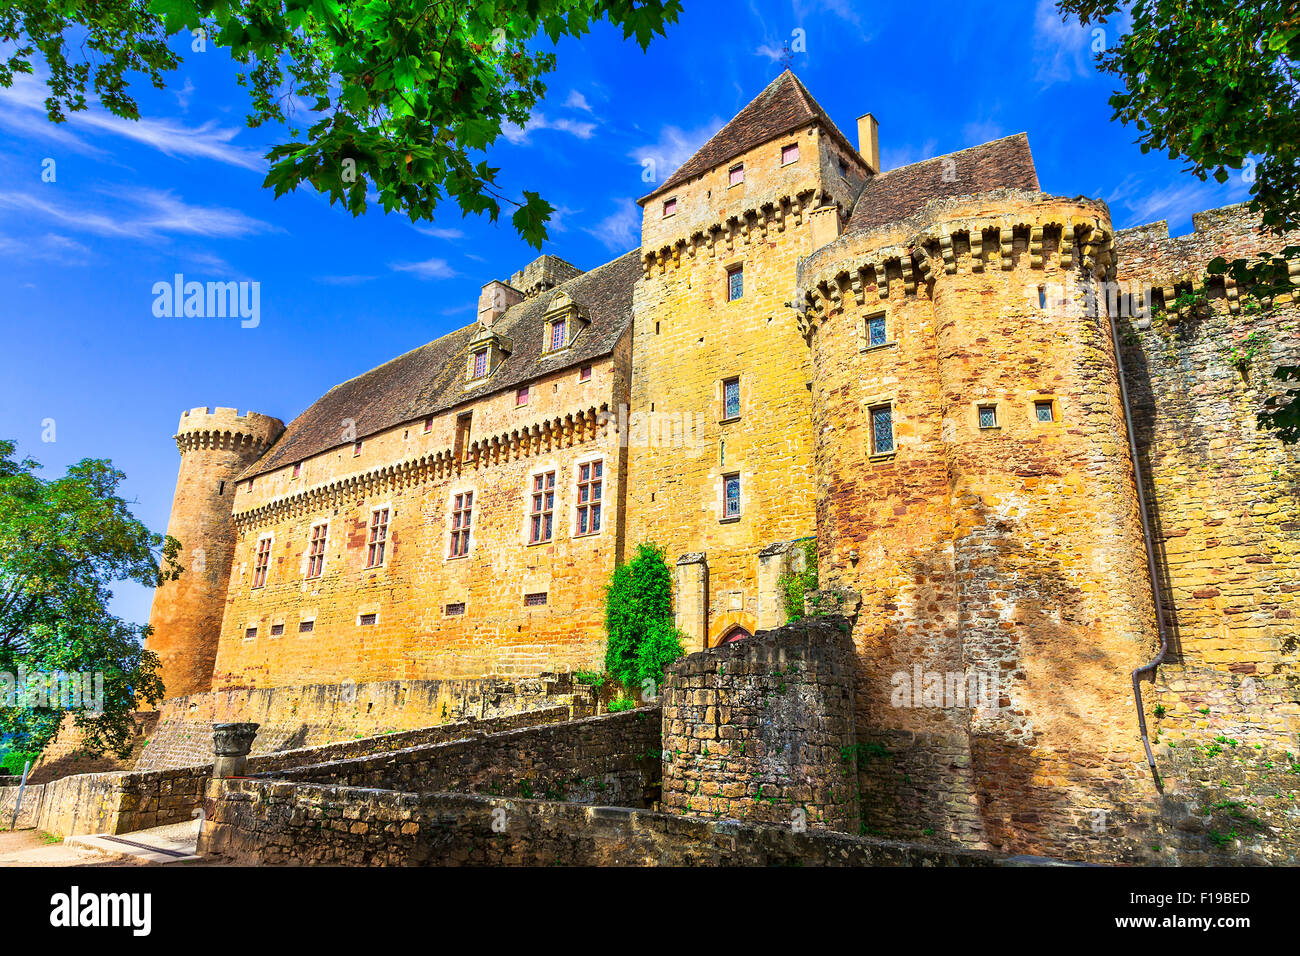 Impressionnant château médiéval de Castelnau en France (Prudhomat, département du Lot), France. Banque D'Images